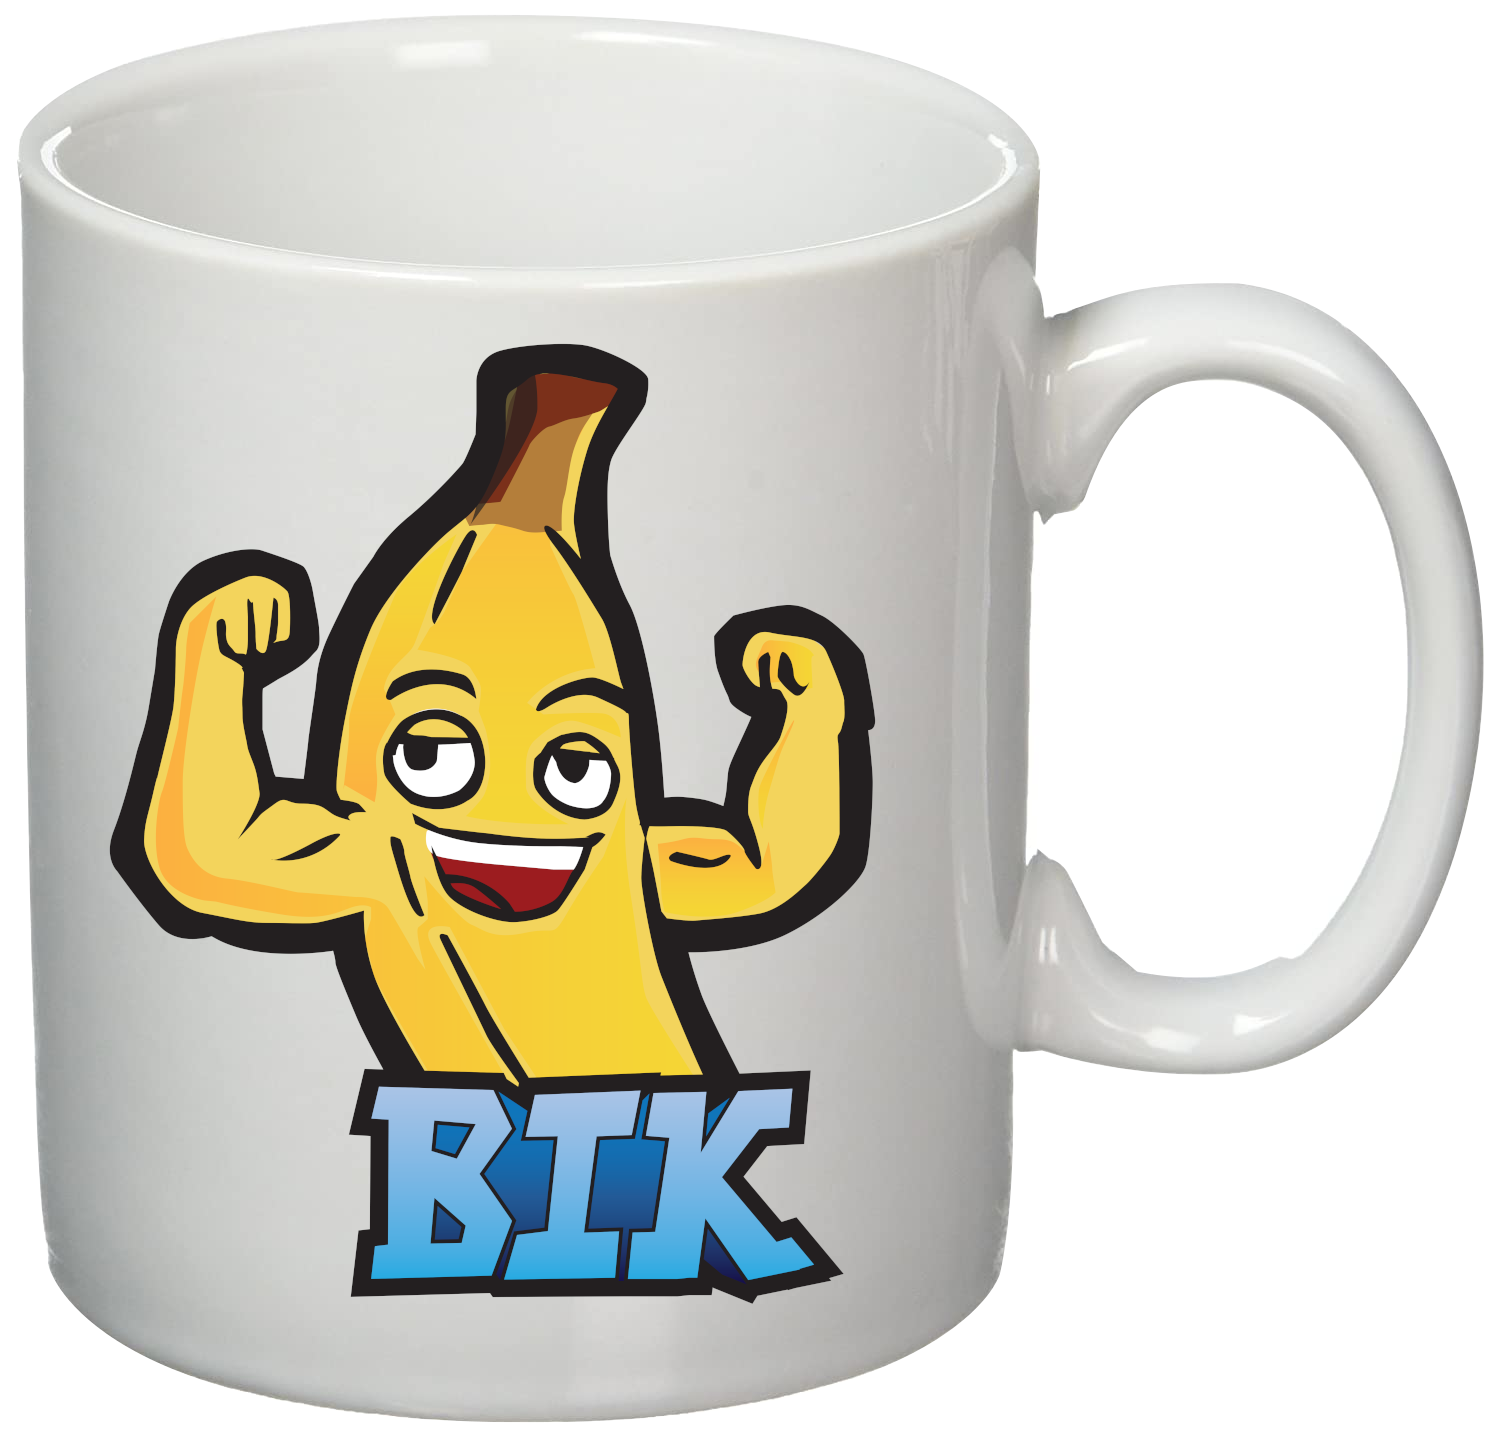 Maxsa BIK Cup